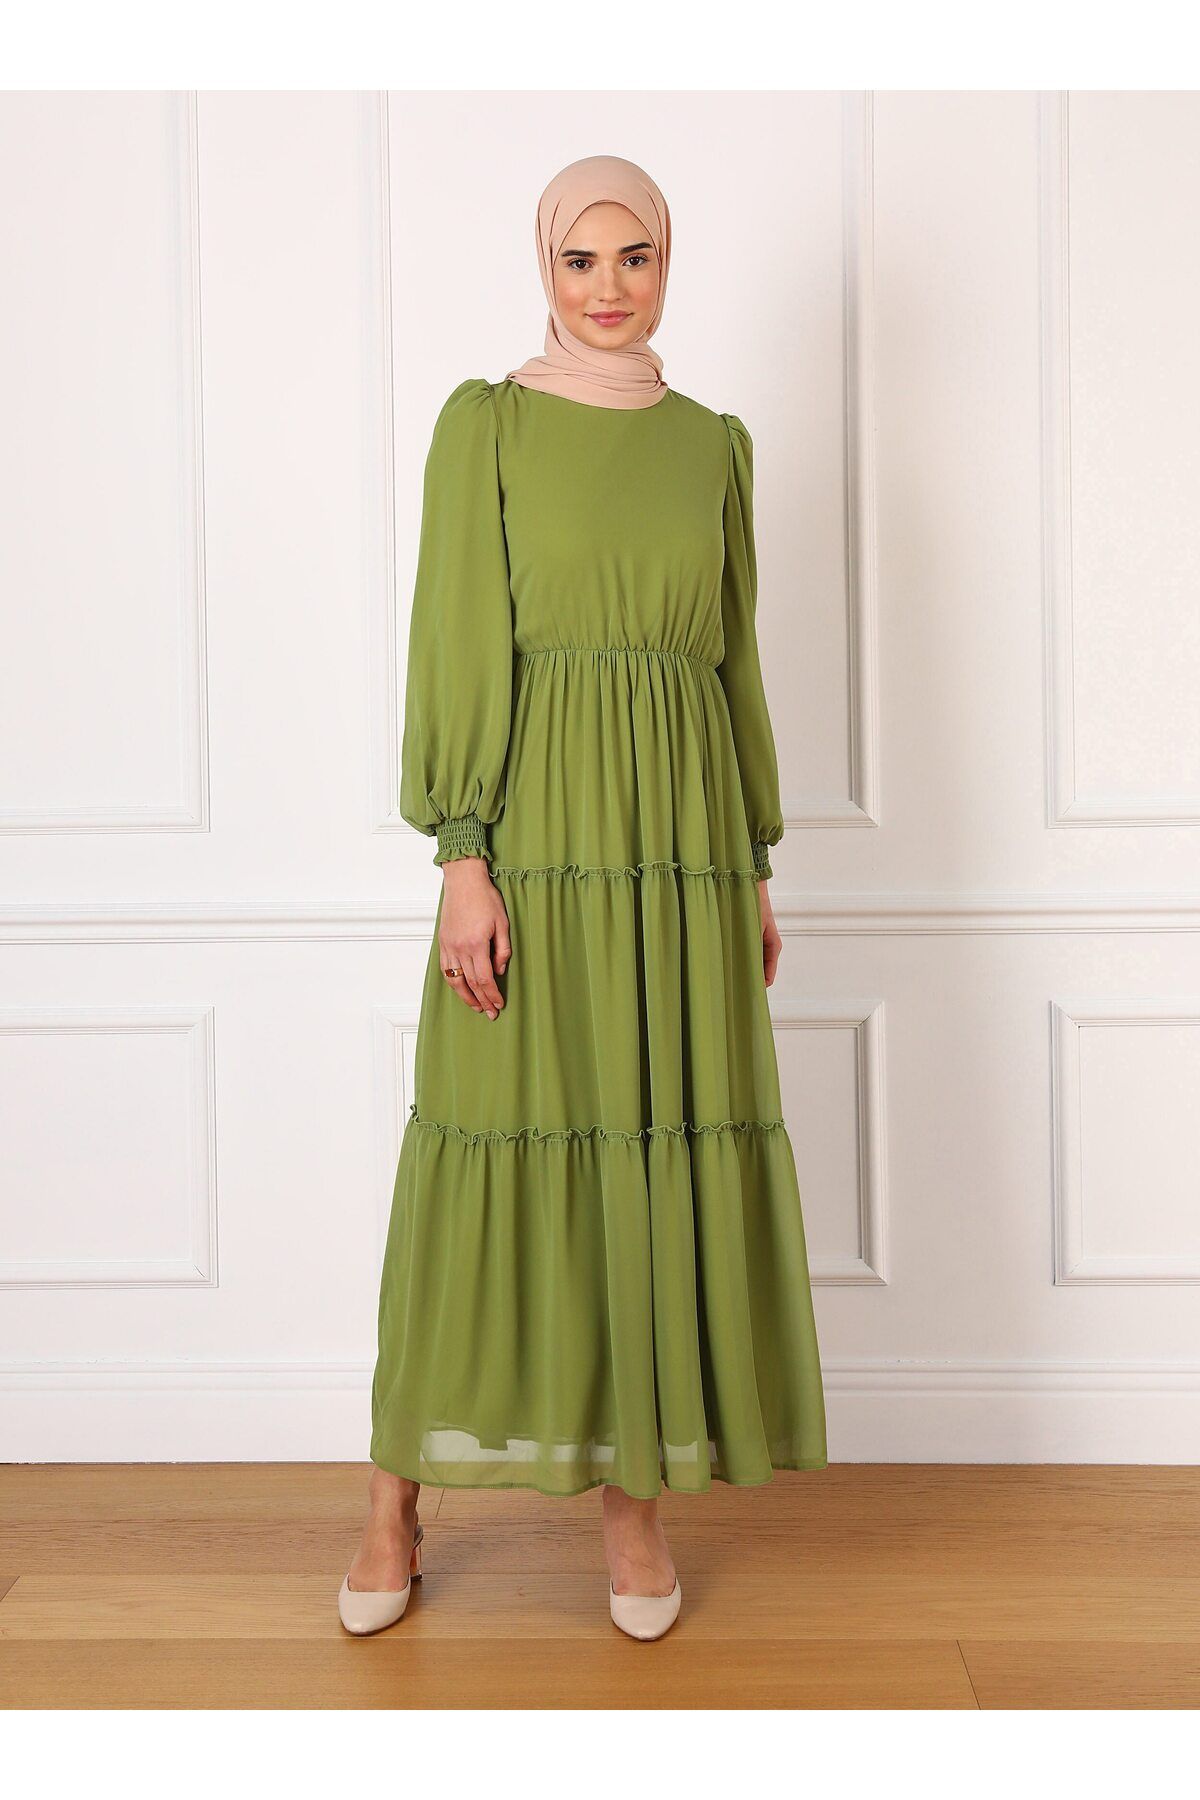 Refka Beli Lastikli Şifon Tesettür Elbise - Yağ Yeşili - Refka